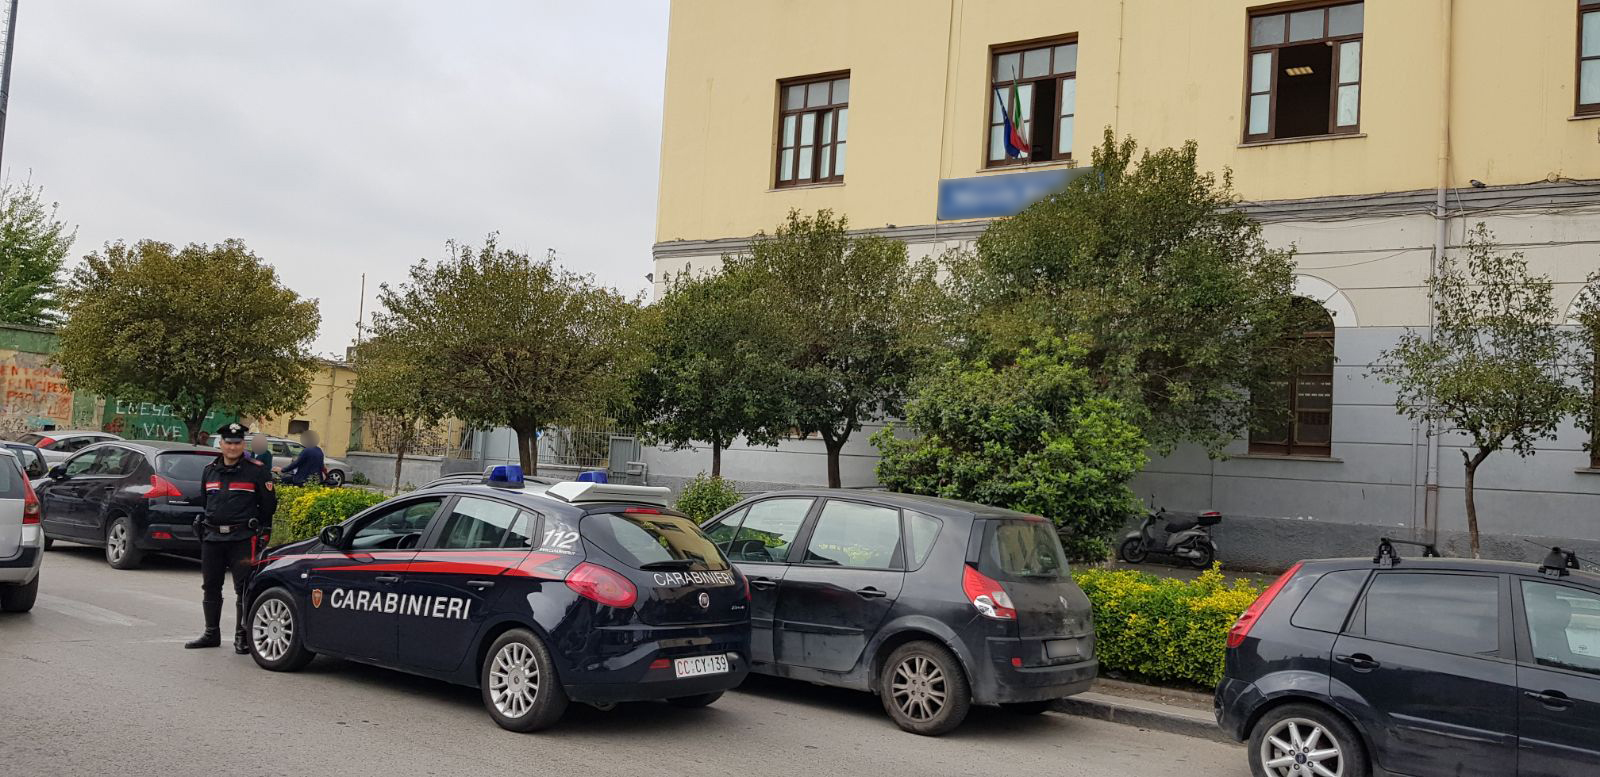  Caivano, sorpresa a vendere hashish a minorenni nei pressi del Liceo Raucci: arrestata 29enne di Sant’Arpino